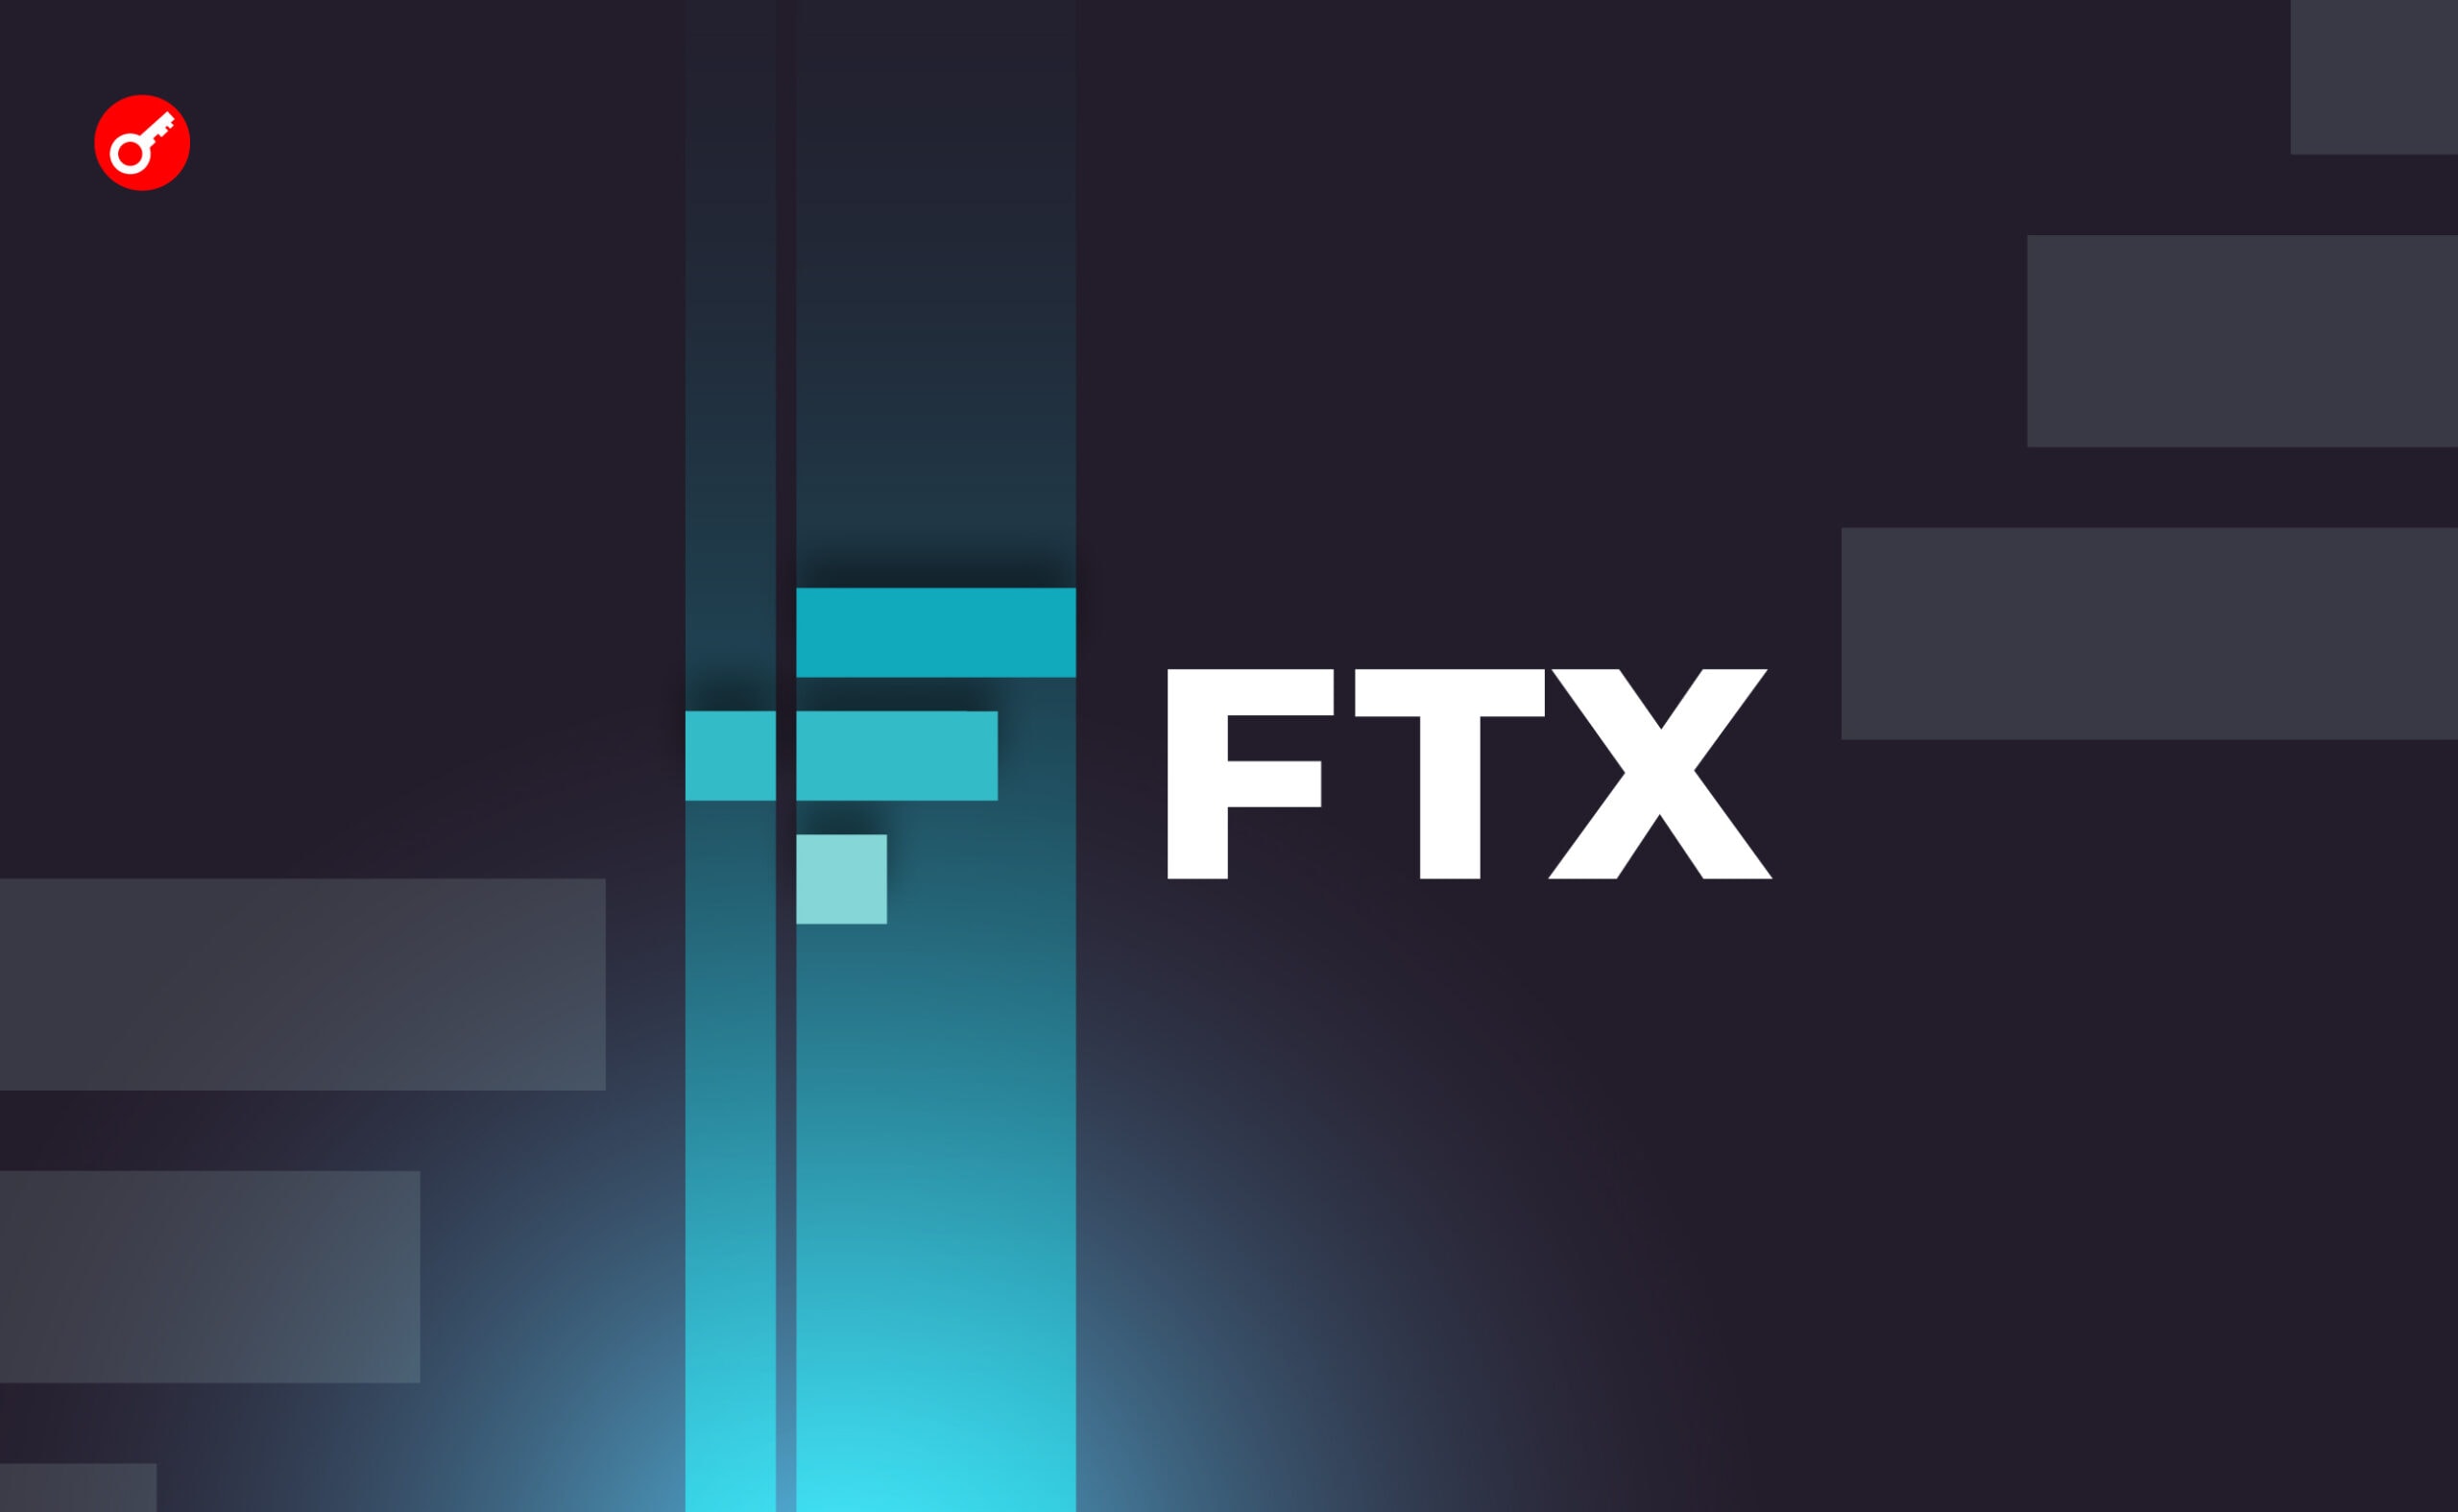 Эксперты: FTX и Alameda Research перевели на Binance криптоактивы на $8,6 млн. Заглавный коллаж новости.